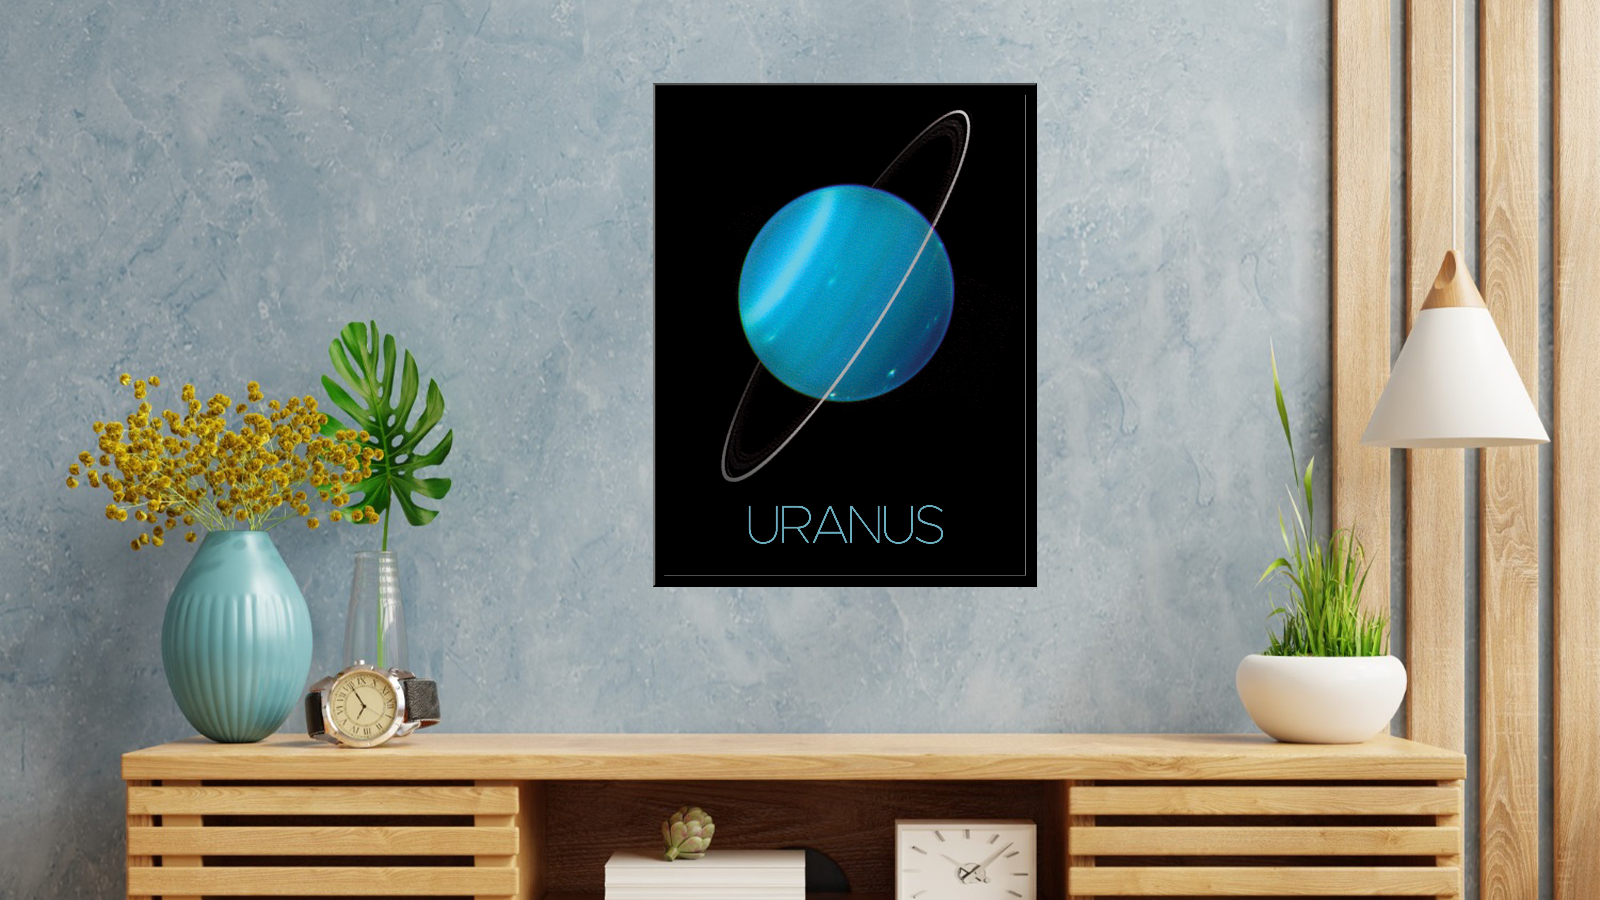 Uranus - rings